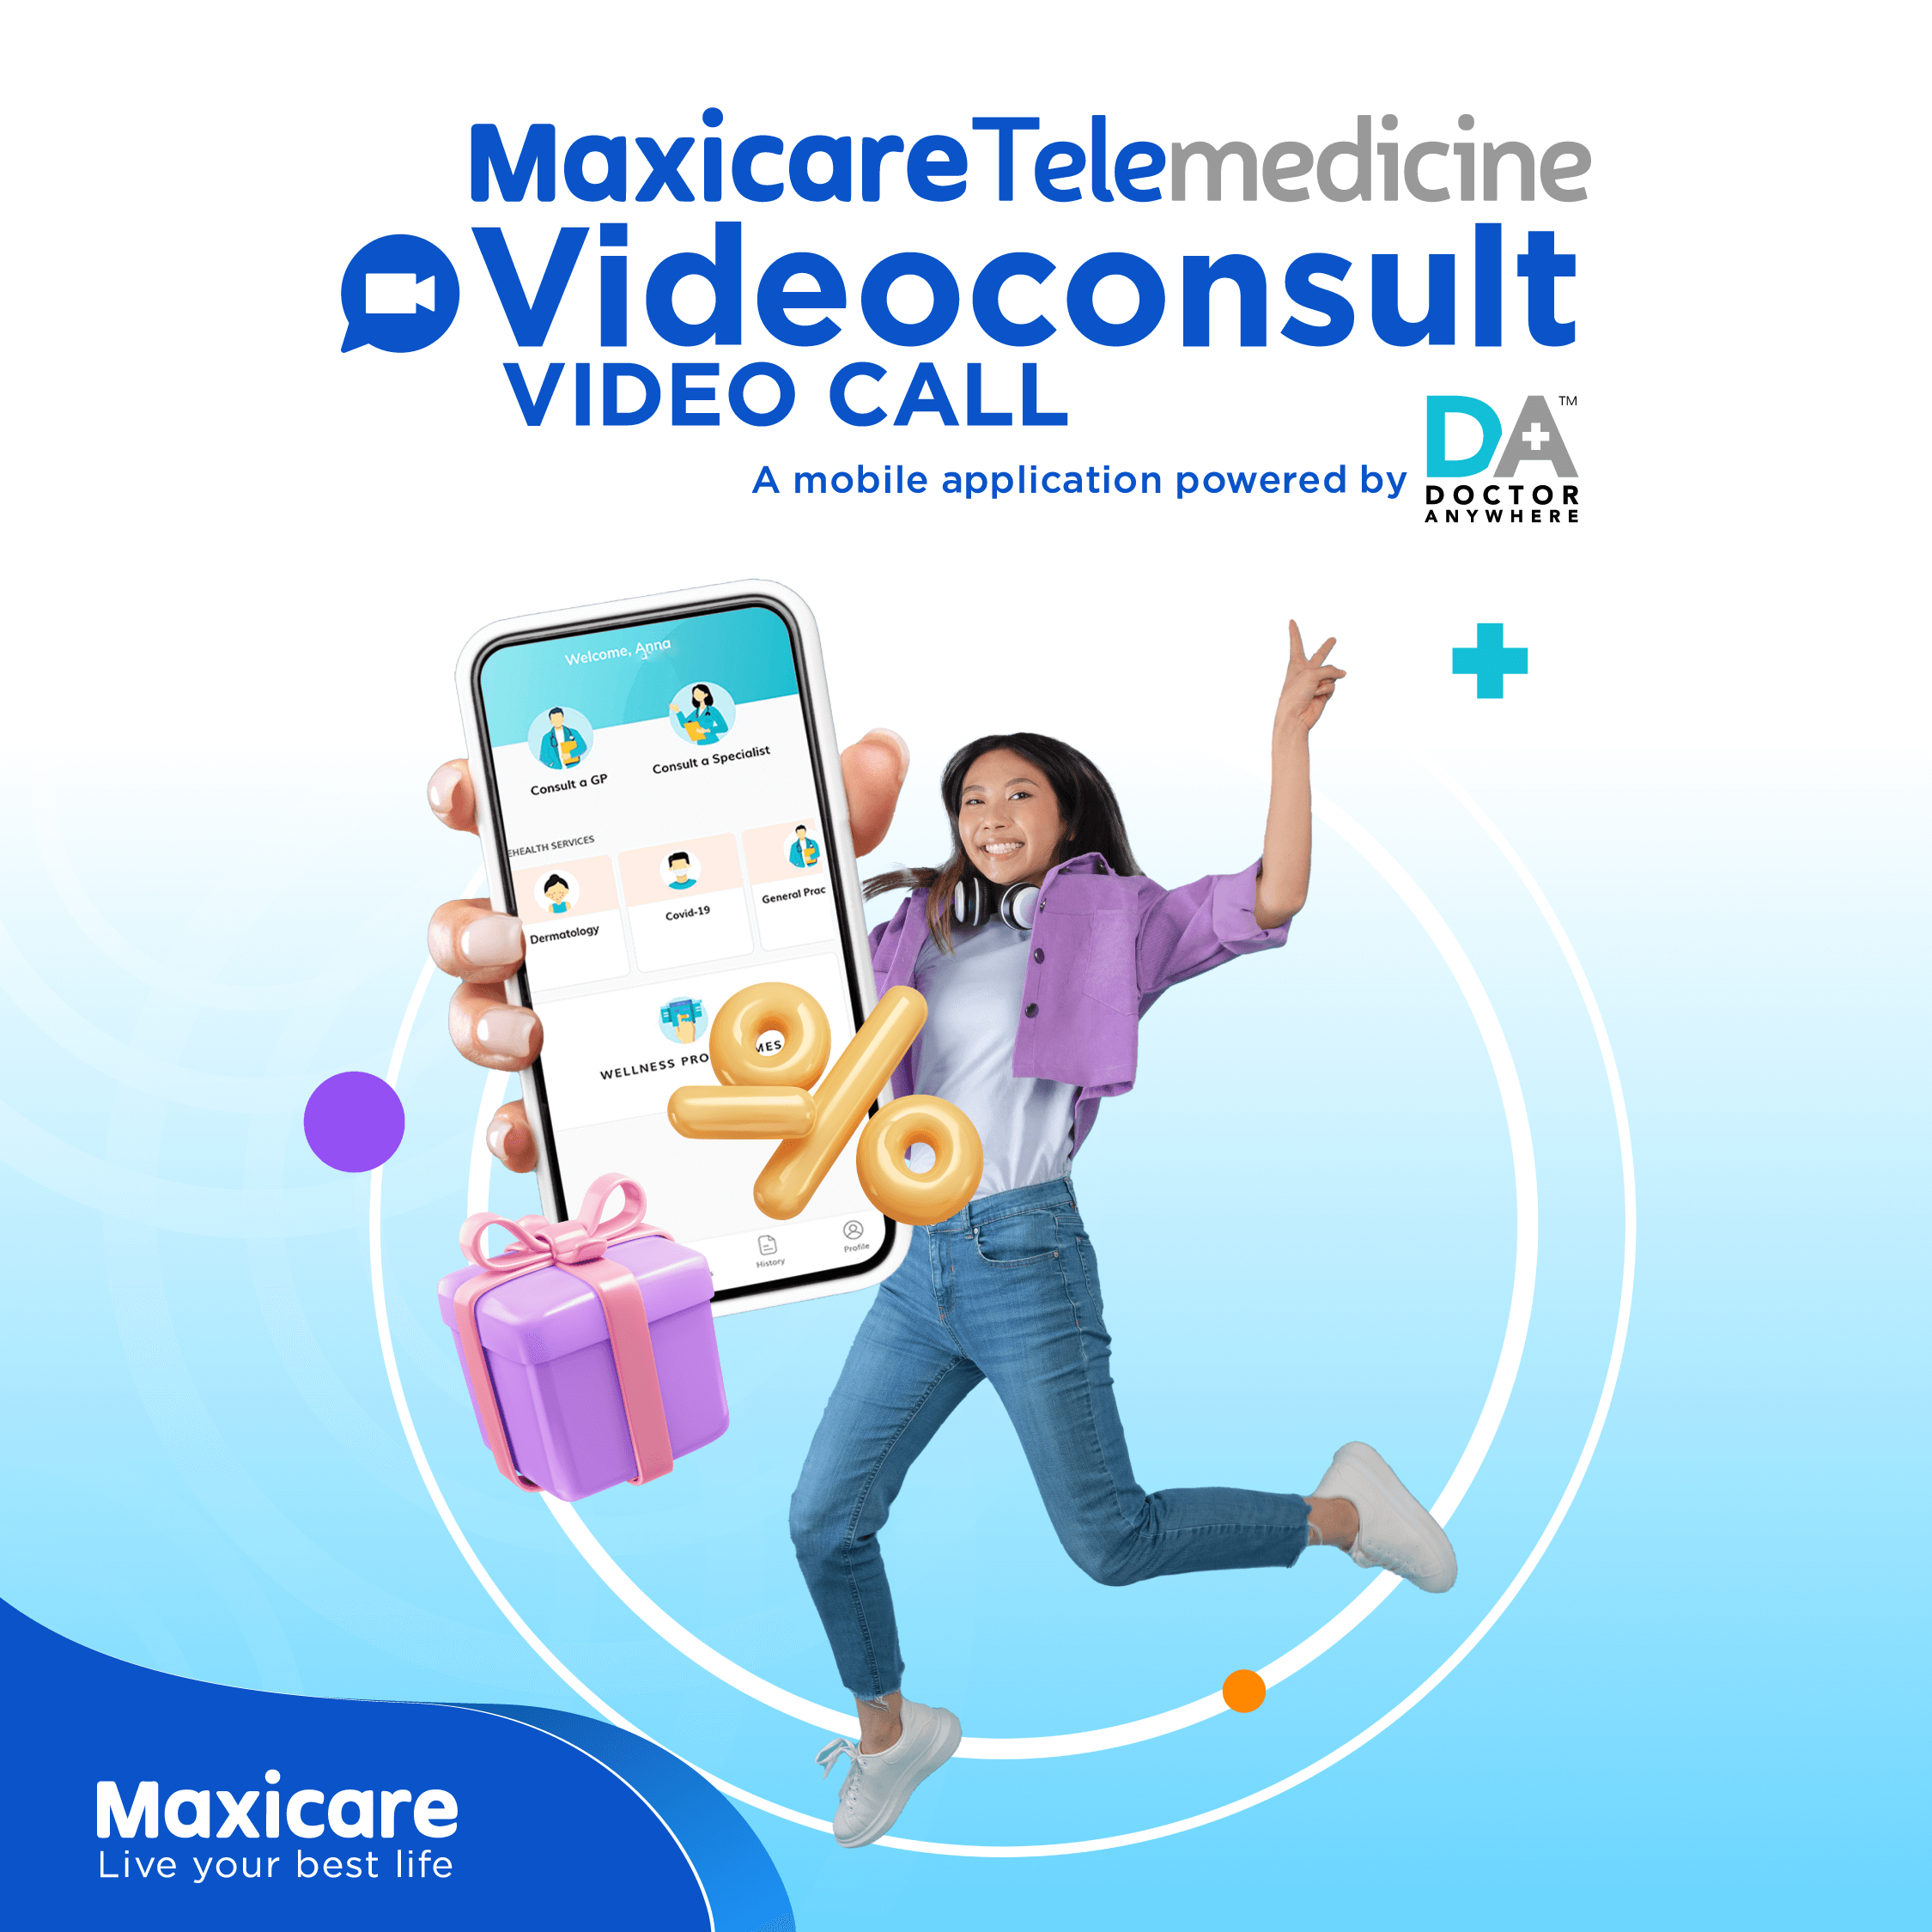 Maxicare Telemedicine - Video consult video call